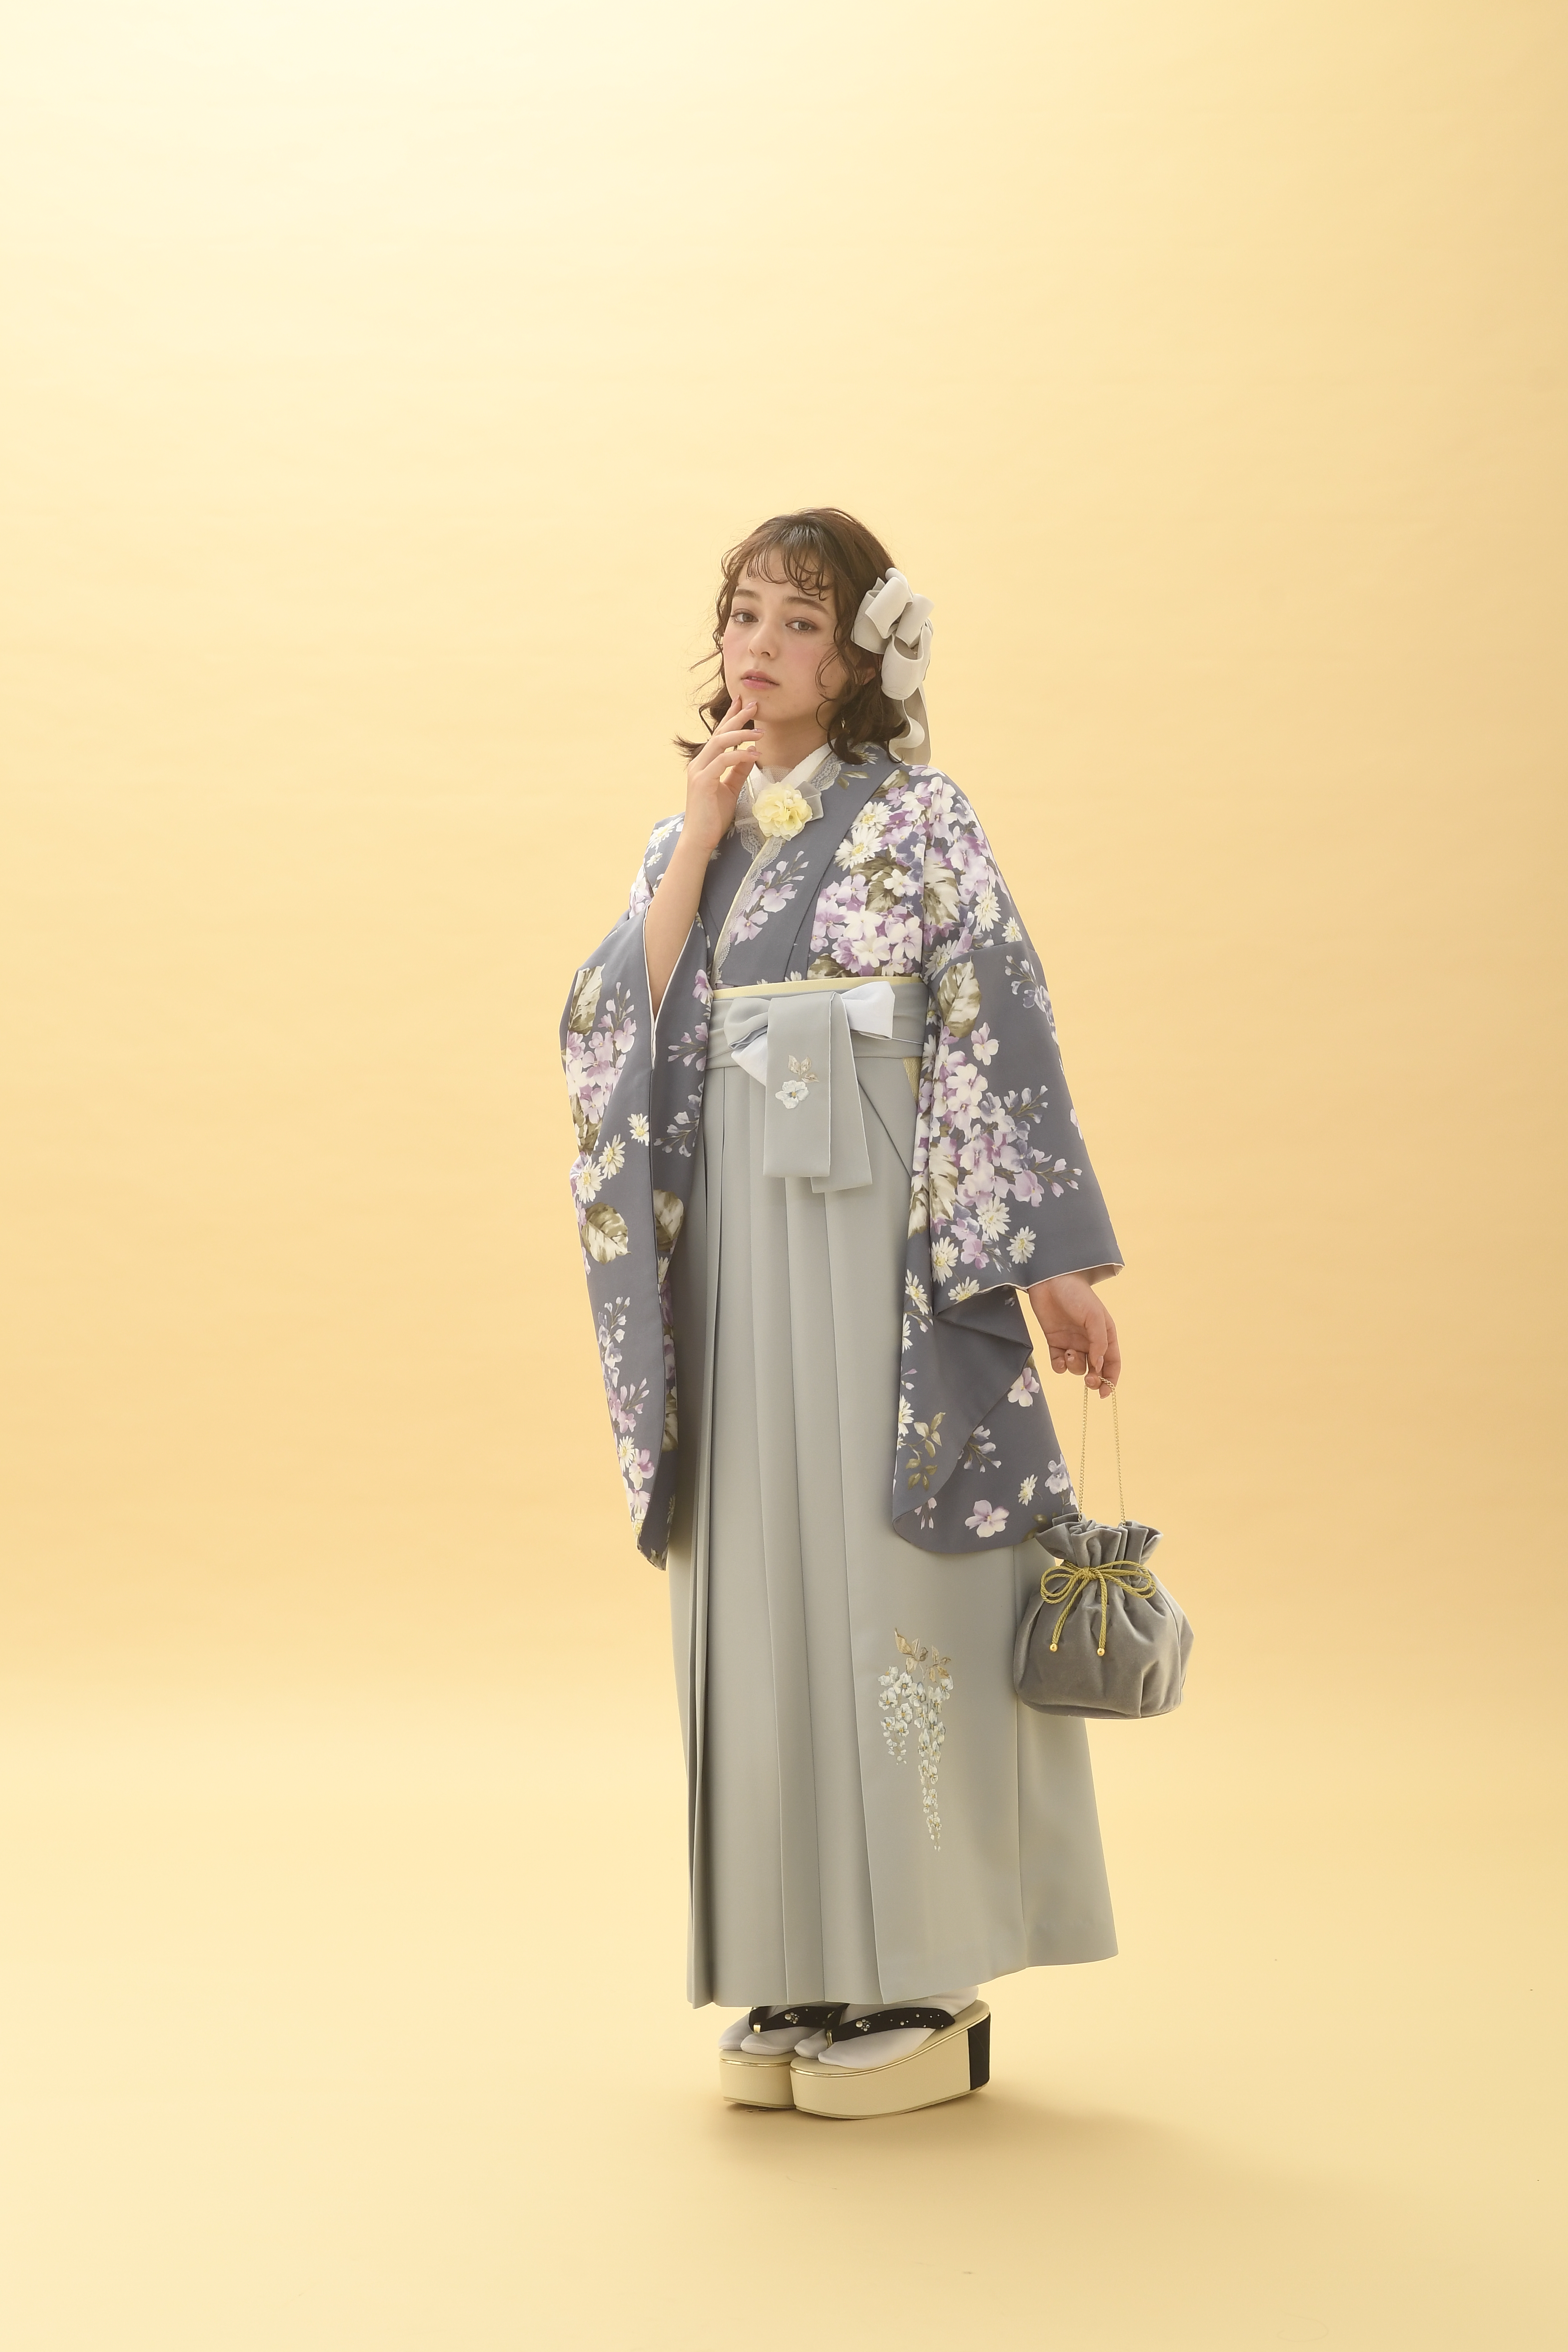 シュガーKブランドの、グレー地に白の小花柄の二尺袖と、グレーの袴の女性用卒業式袴を着用した全身写真